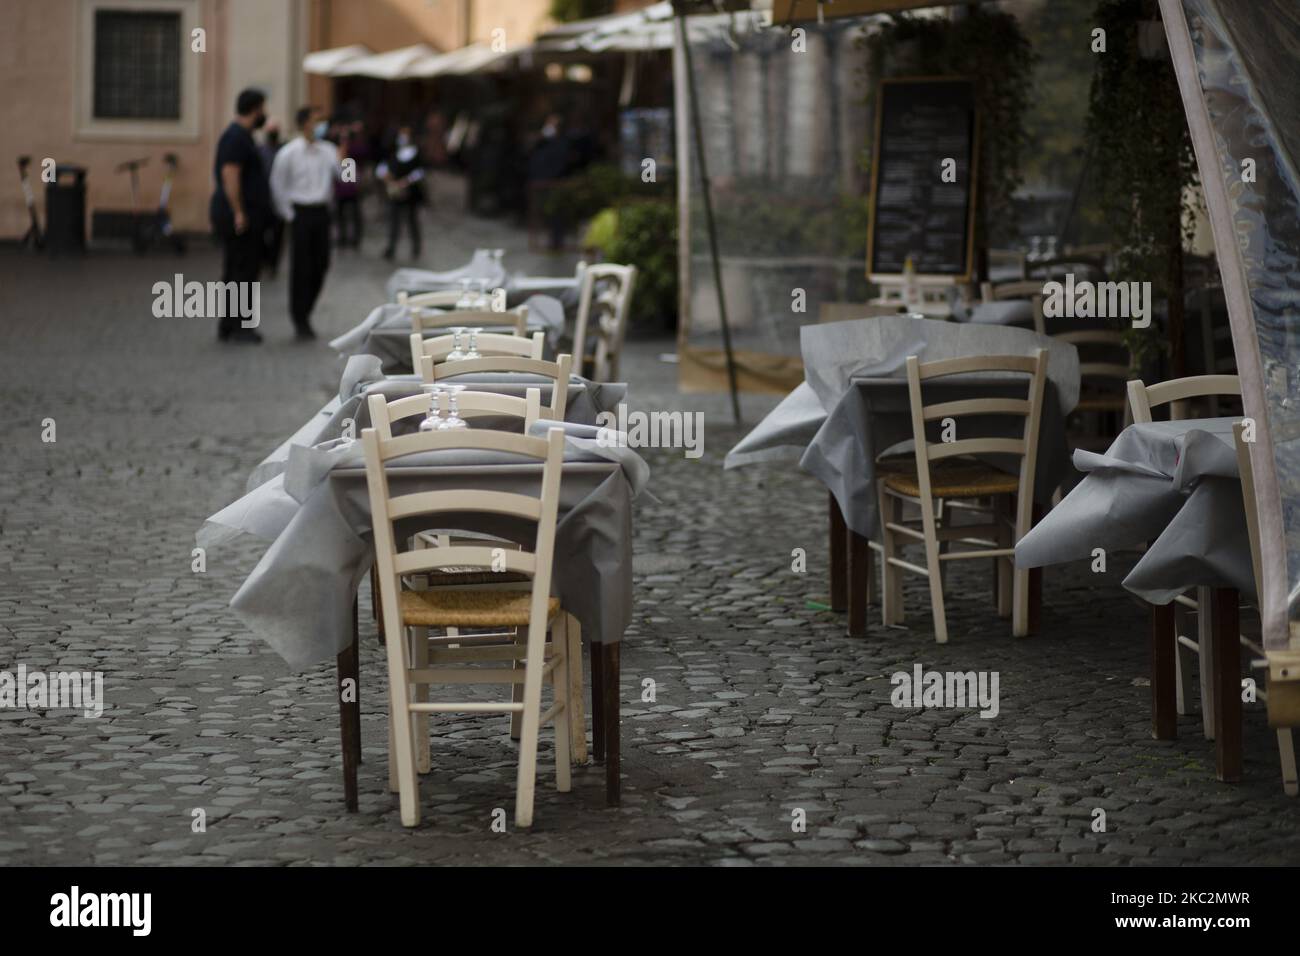 Der Wind bewegt die Tischdecken an den Tischen eines verlassenen Restaurants im Stadtteil Trastevere, da Italien in Rom, Italien, am 26. Oktober 2020, mit einem Anstieg der Infektionen mit dem Coronavirus (COVID-19) konfrontiert ist. Die italienische Regierung hat neue landesweite Covid-19-Beschränkungen beschlossen, die am 26. Oktober in Kraft treten und die Schließung von Restaurants und Bars bis 6pm sowie die Schließung von Fitnessstudios, Kinos und Schwimmbädern umfassen. Nach Angaben des Gesundheitsministeriums gab es in den letzten 24 Stunden von 124.686 durchgeführten Tampons 17.012 Infektionen mit Covid-19. 141 Todesfälle und 76 weitere Patienten wurden in Intensi aufgenommen Stockfoto